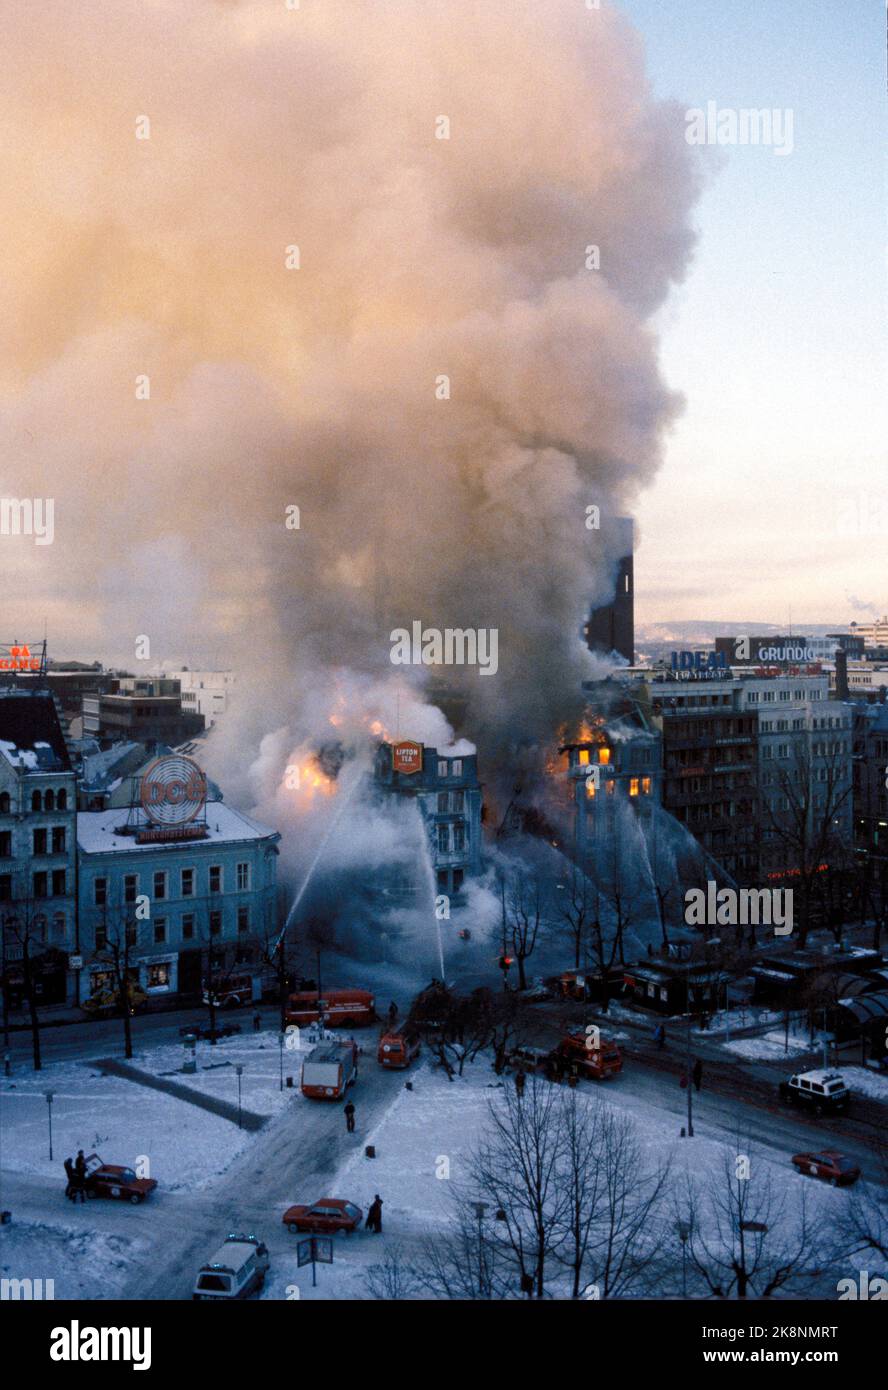 Oslo 1986-02-19: STORTINGSGATA 8 TOTALSKADD AV BRANN. Etter seks timers innsats fikk Oslo brannvesen kontroll over flammene som herjet hjørnegården Stortingsgata 8. Da var bygningen fullstendig utbrent. Også nabogården Rosenkrantzgate 13B ble totalskadd. 70 brannmenn og 21 biler deltok på det meste i brannslukningen. En brannmann ble skadet og en stigebil ødelagt da fasaden mot Stortingsgata raste ut. For brannmannskapene var det en meget kaldt under slukningsarbeidet, - 20 minusgrader. Morgenen etter var brannruinene dekket av is. Brannen betegnes som den største i Oslo sentrum siden lille ju Stock Photo